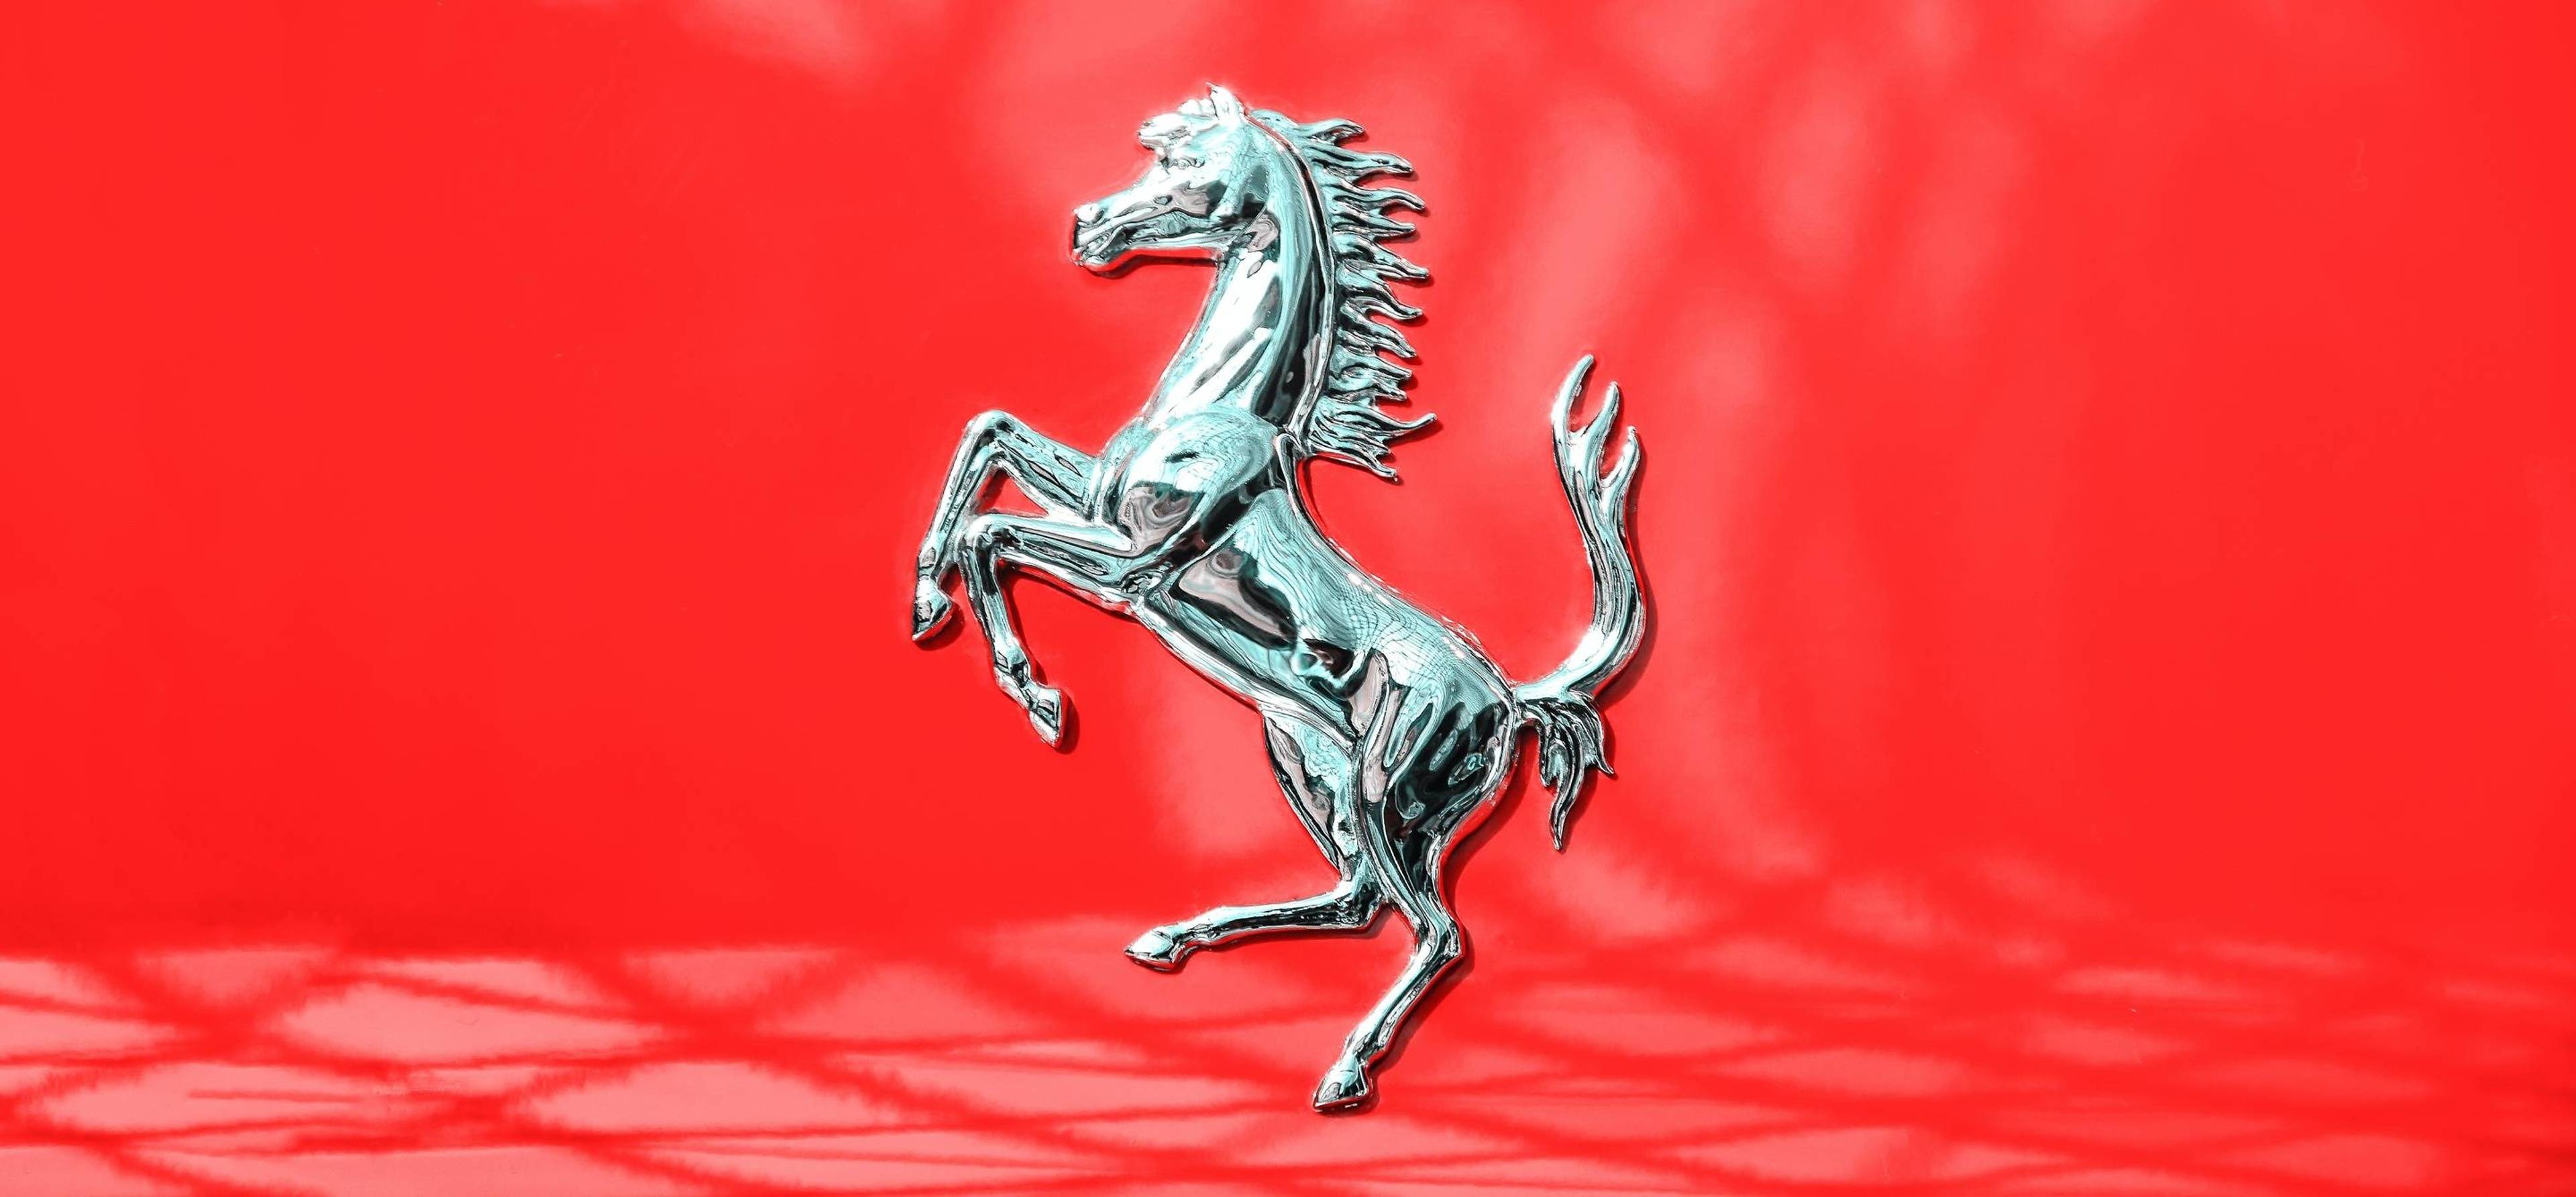 Ferrari's Favourite Test Route